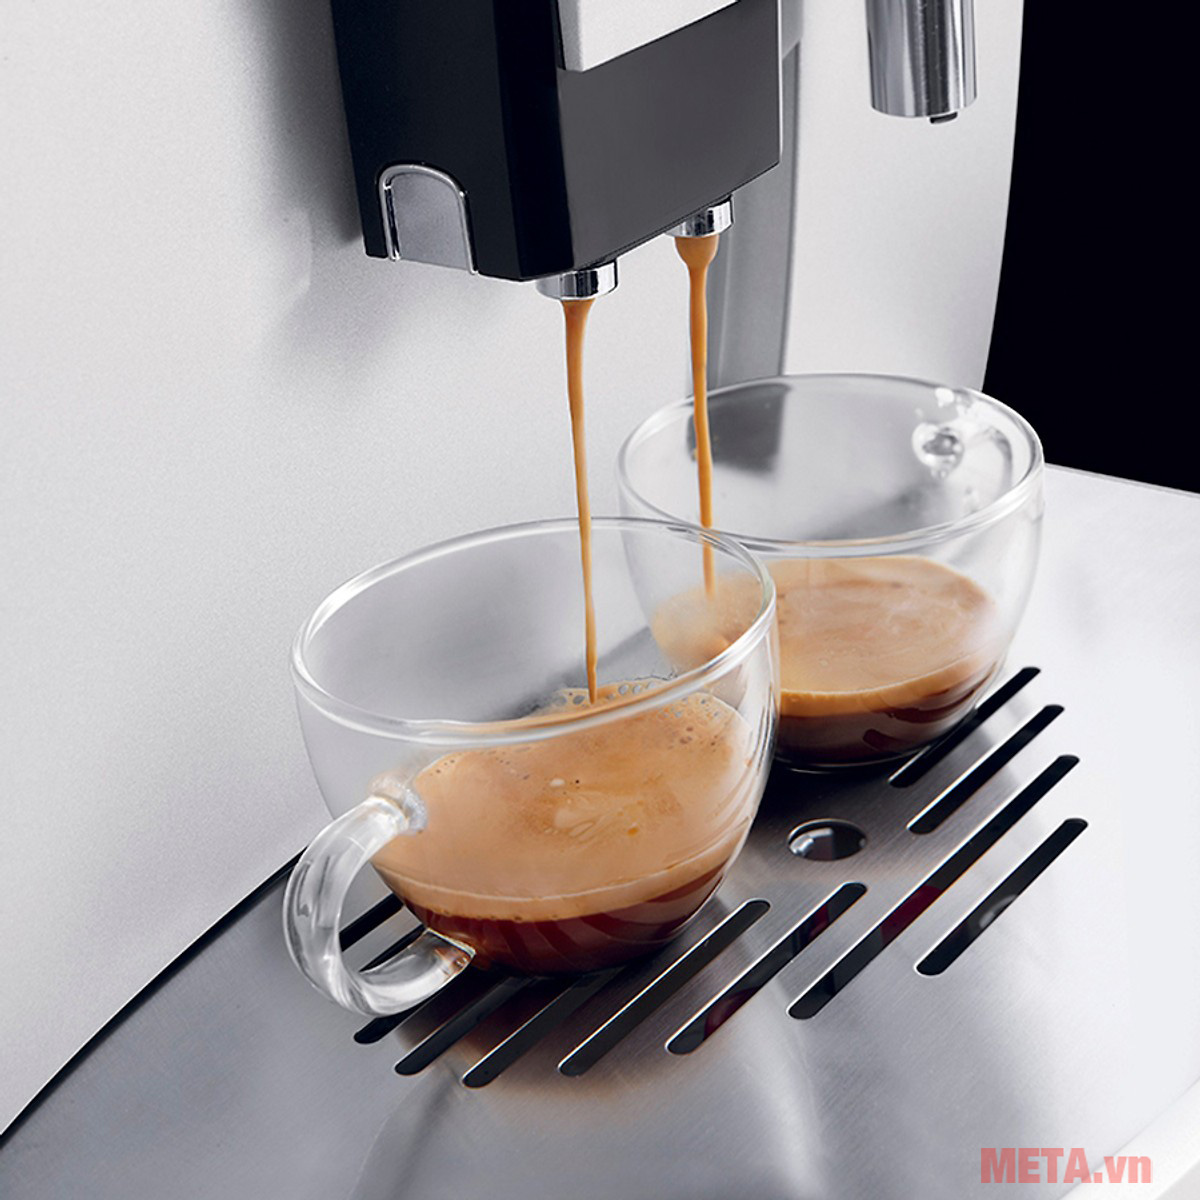 Máy pha cà phê tự động DeLonghi